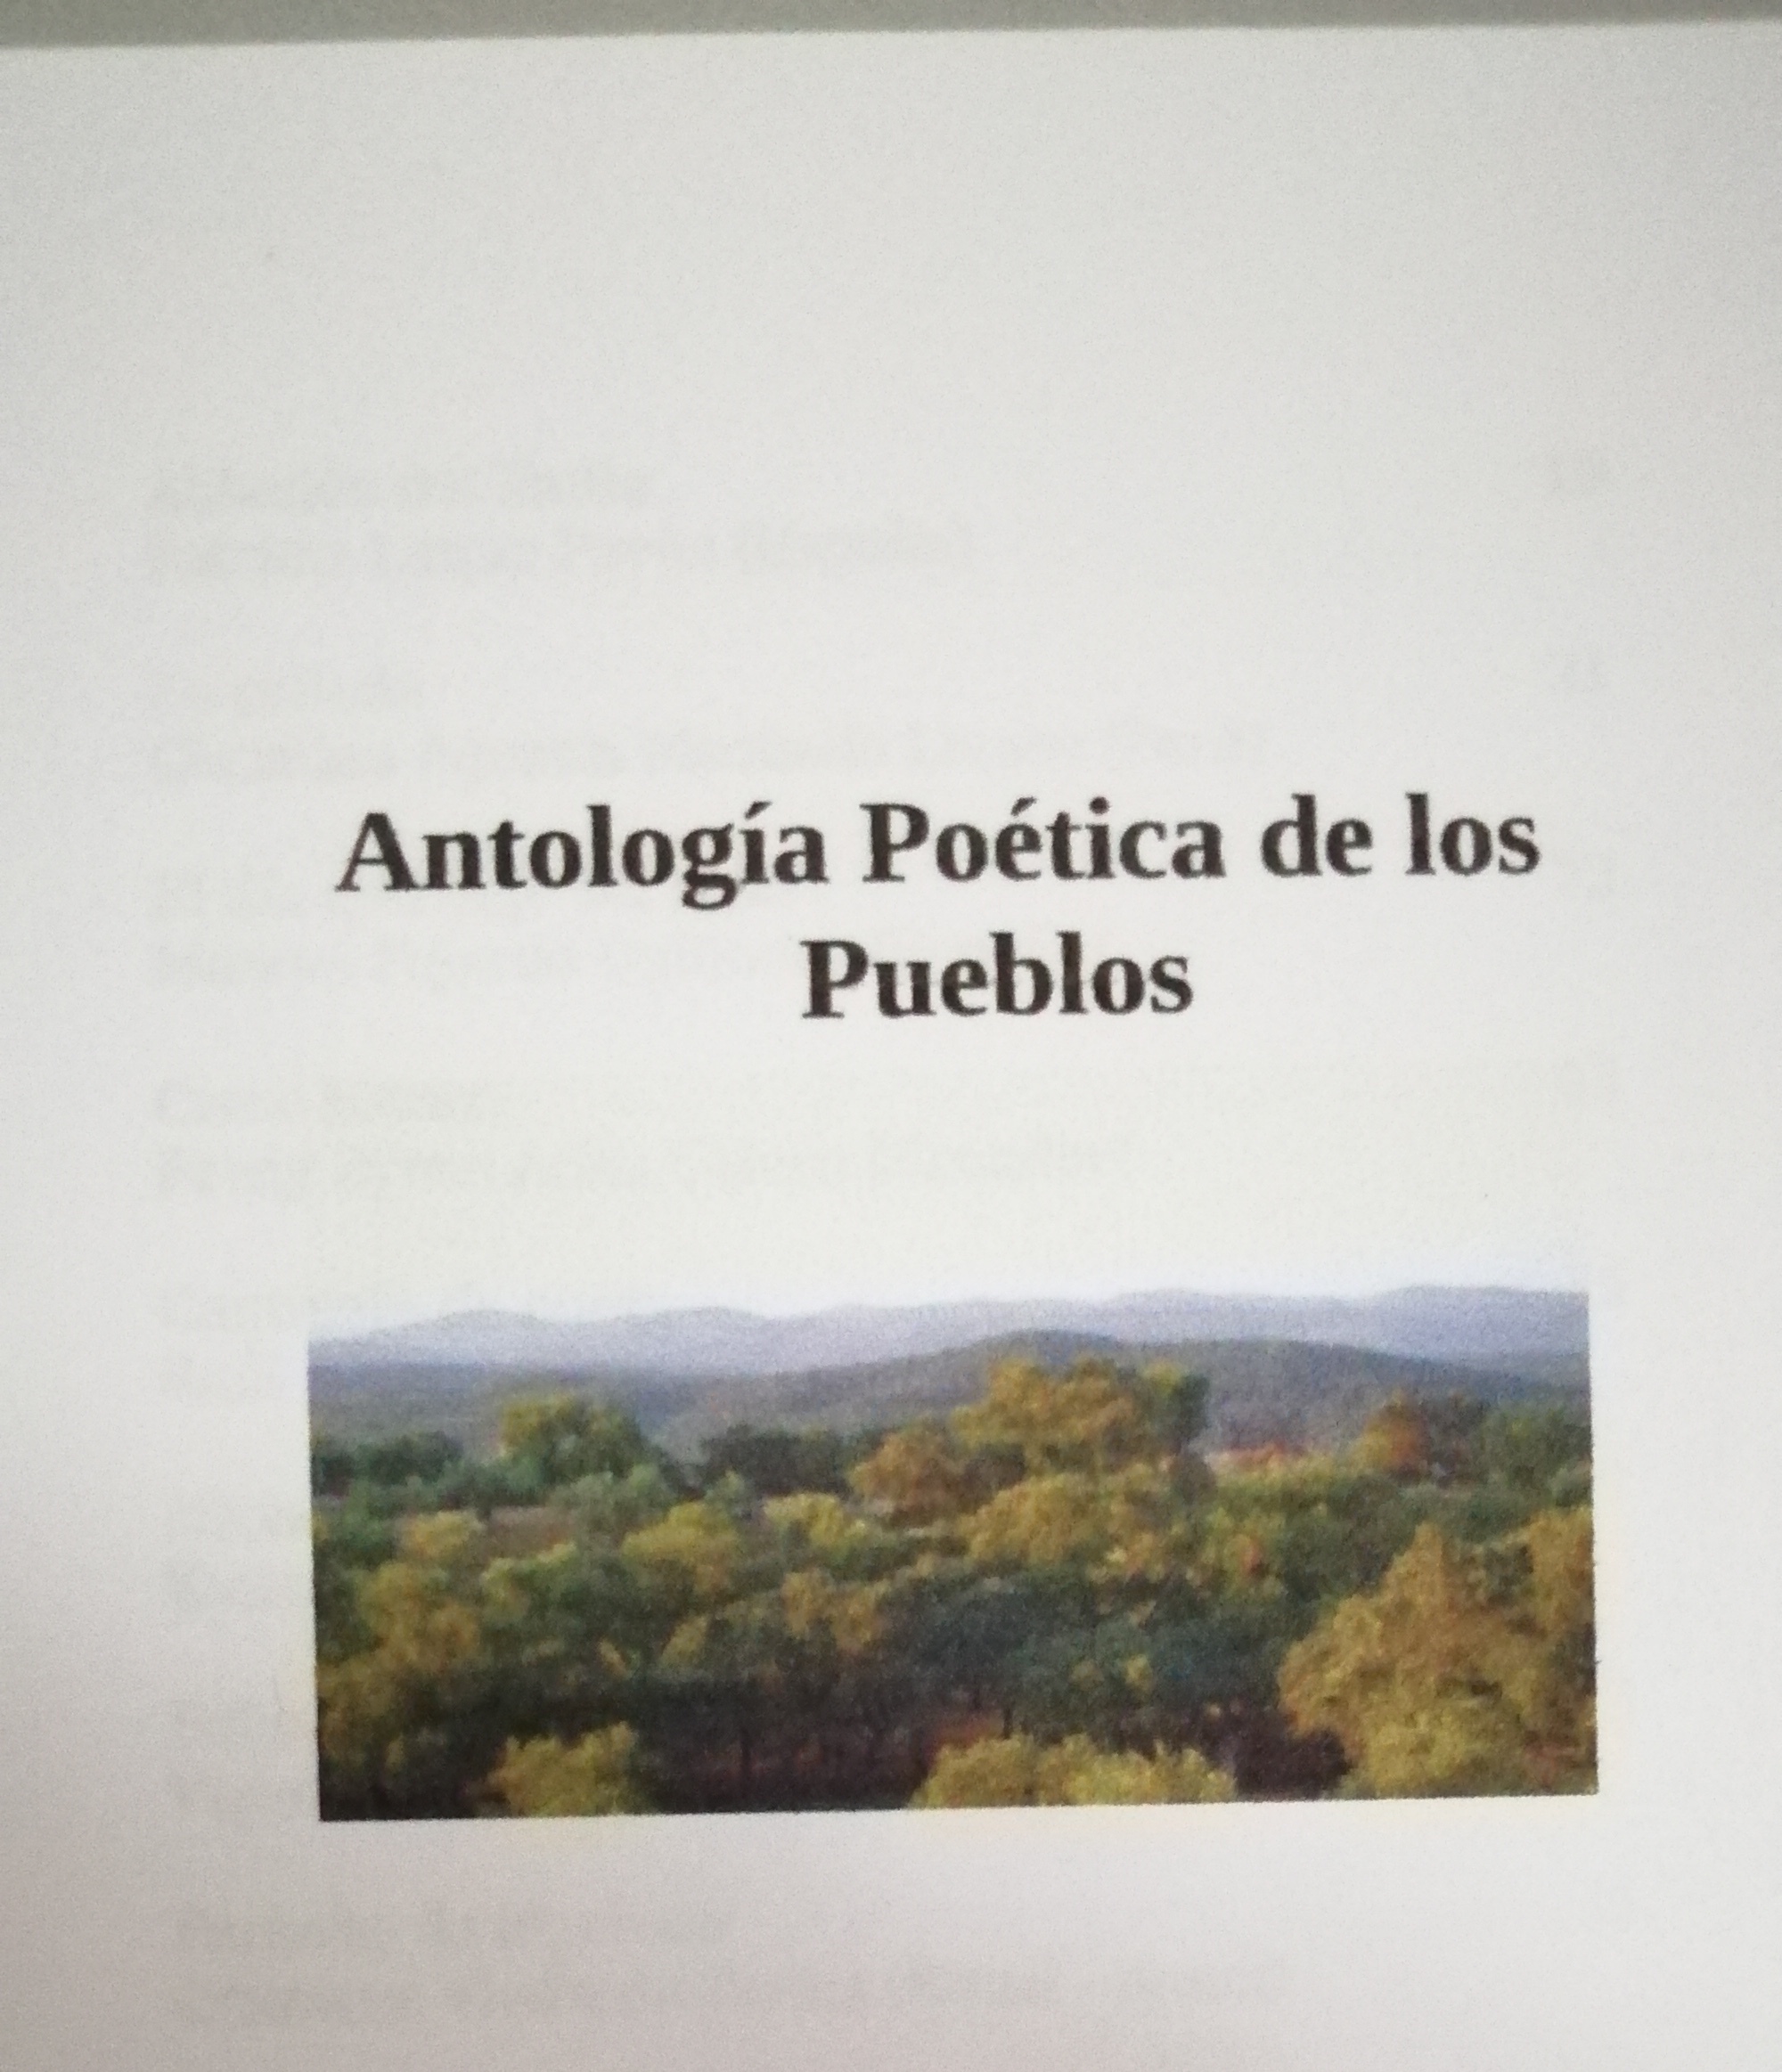 Antología poética de los pueblos